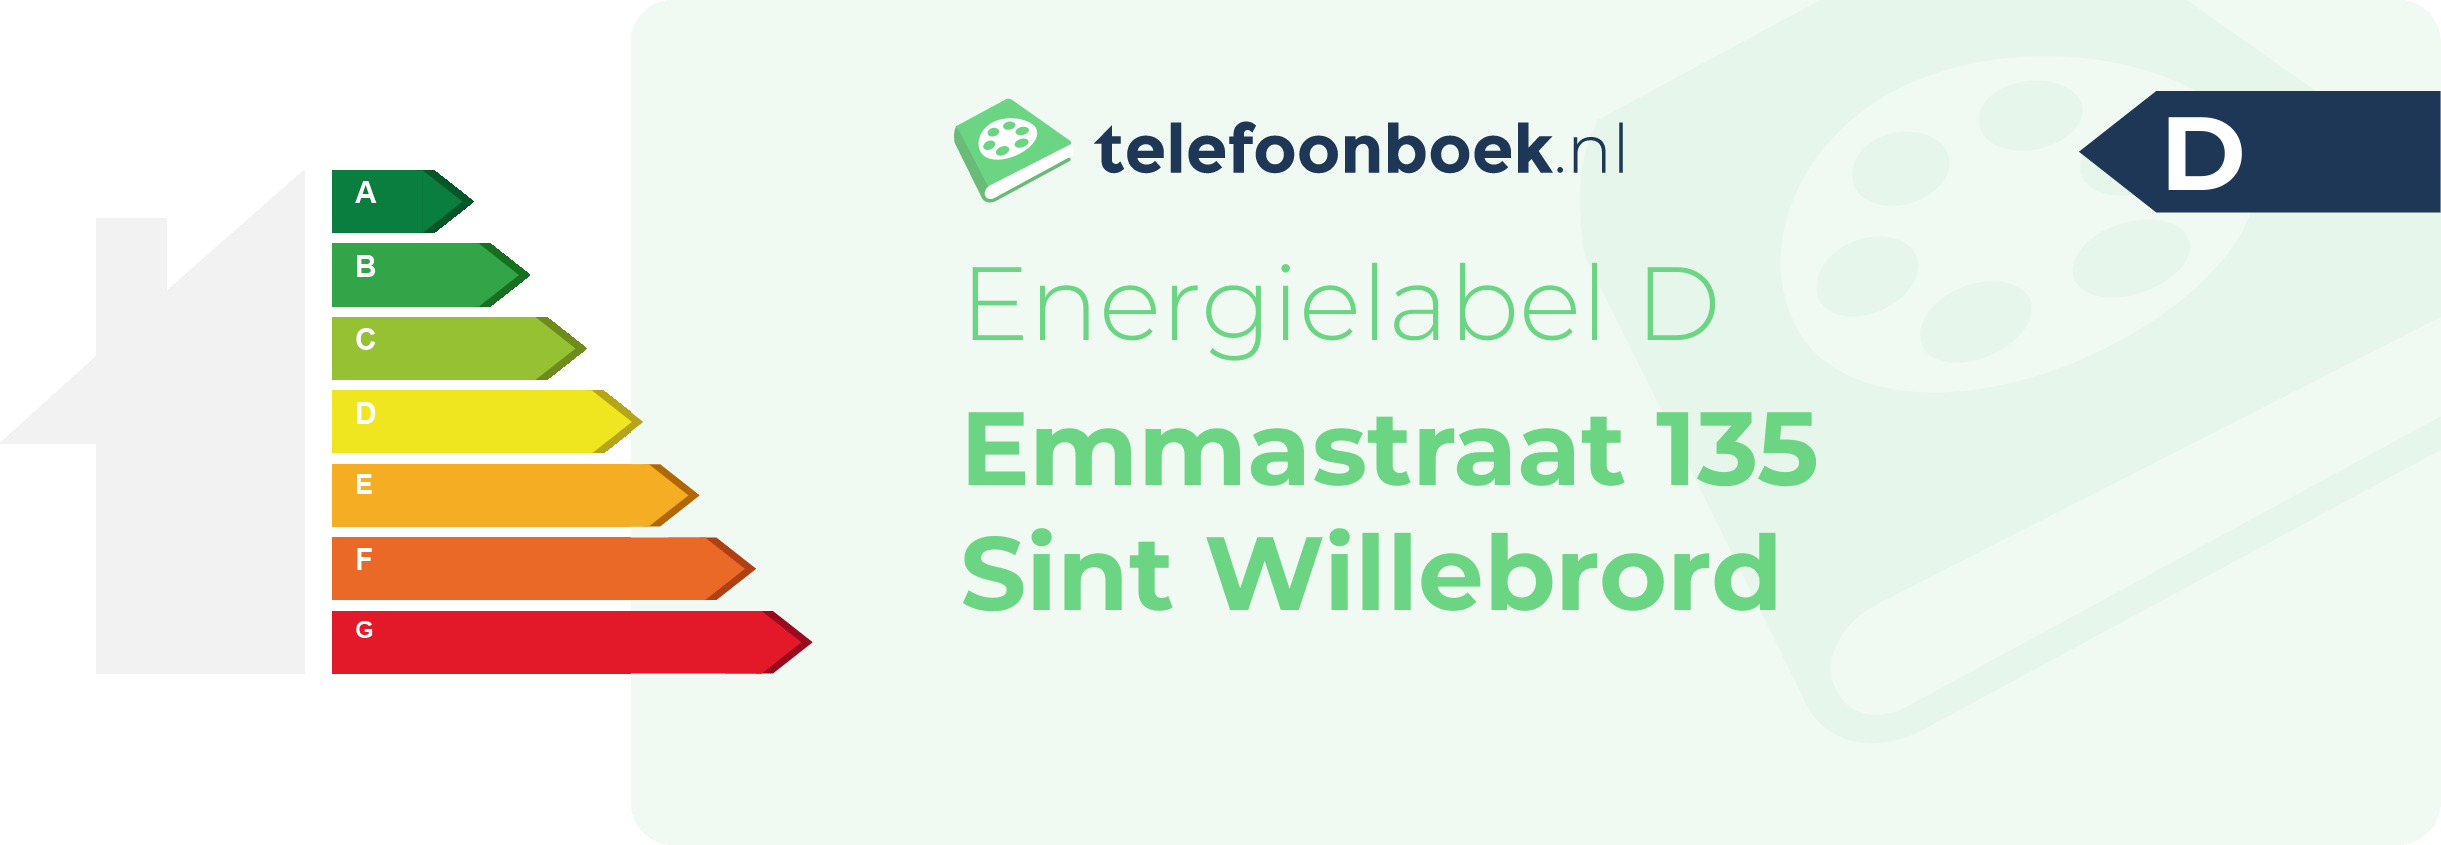 Energielabel Emmastraat 135 Sint Willebrord